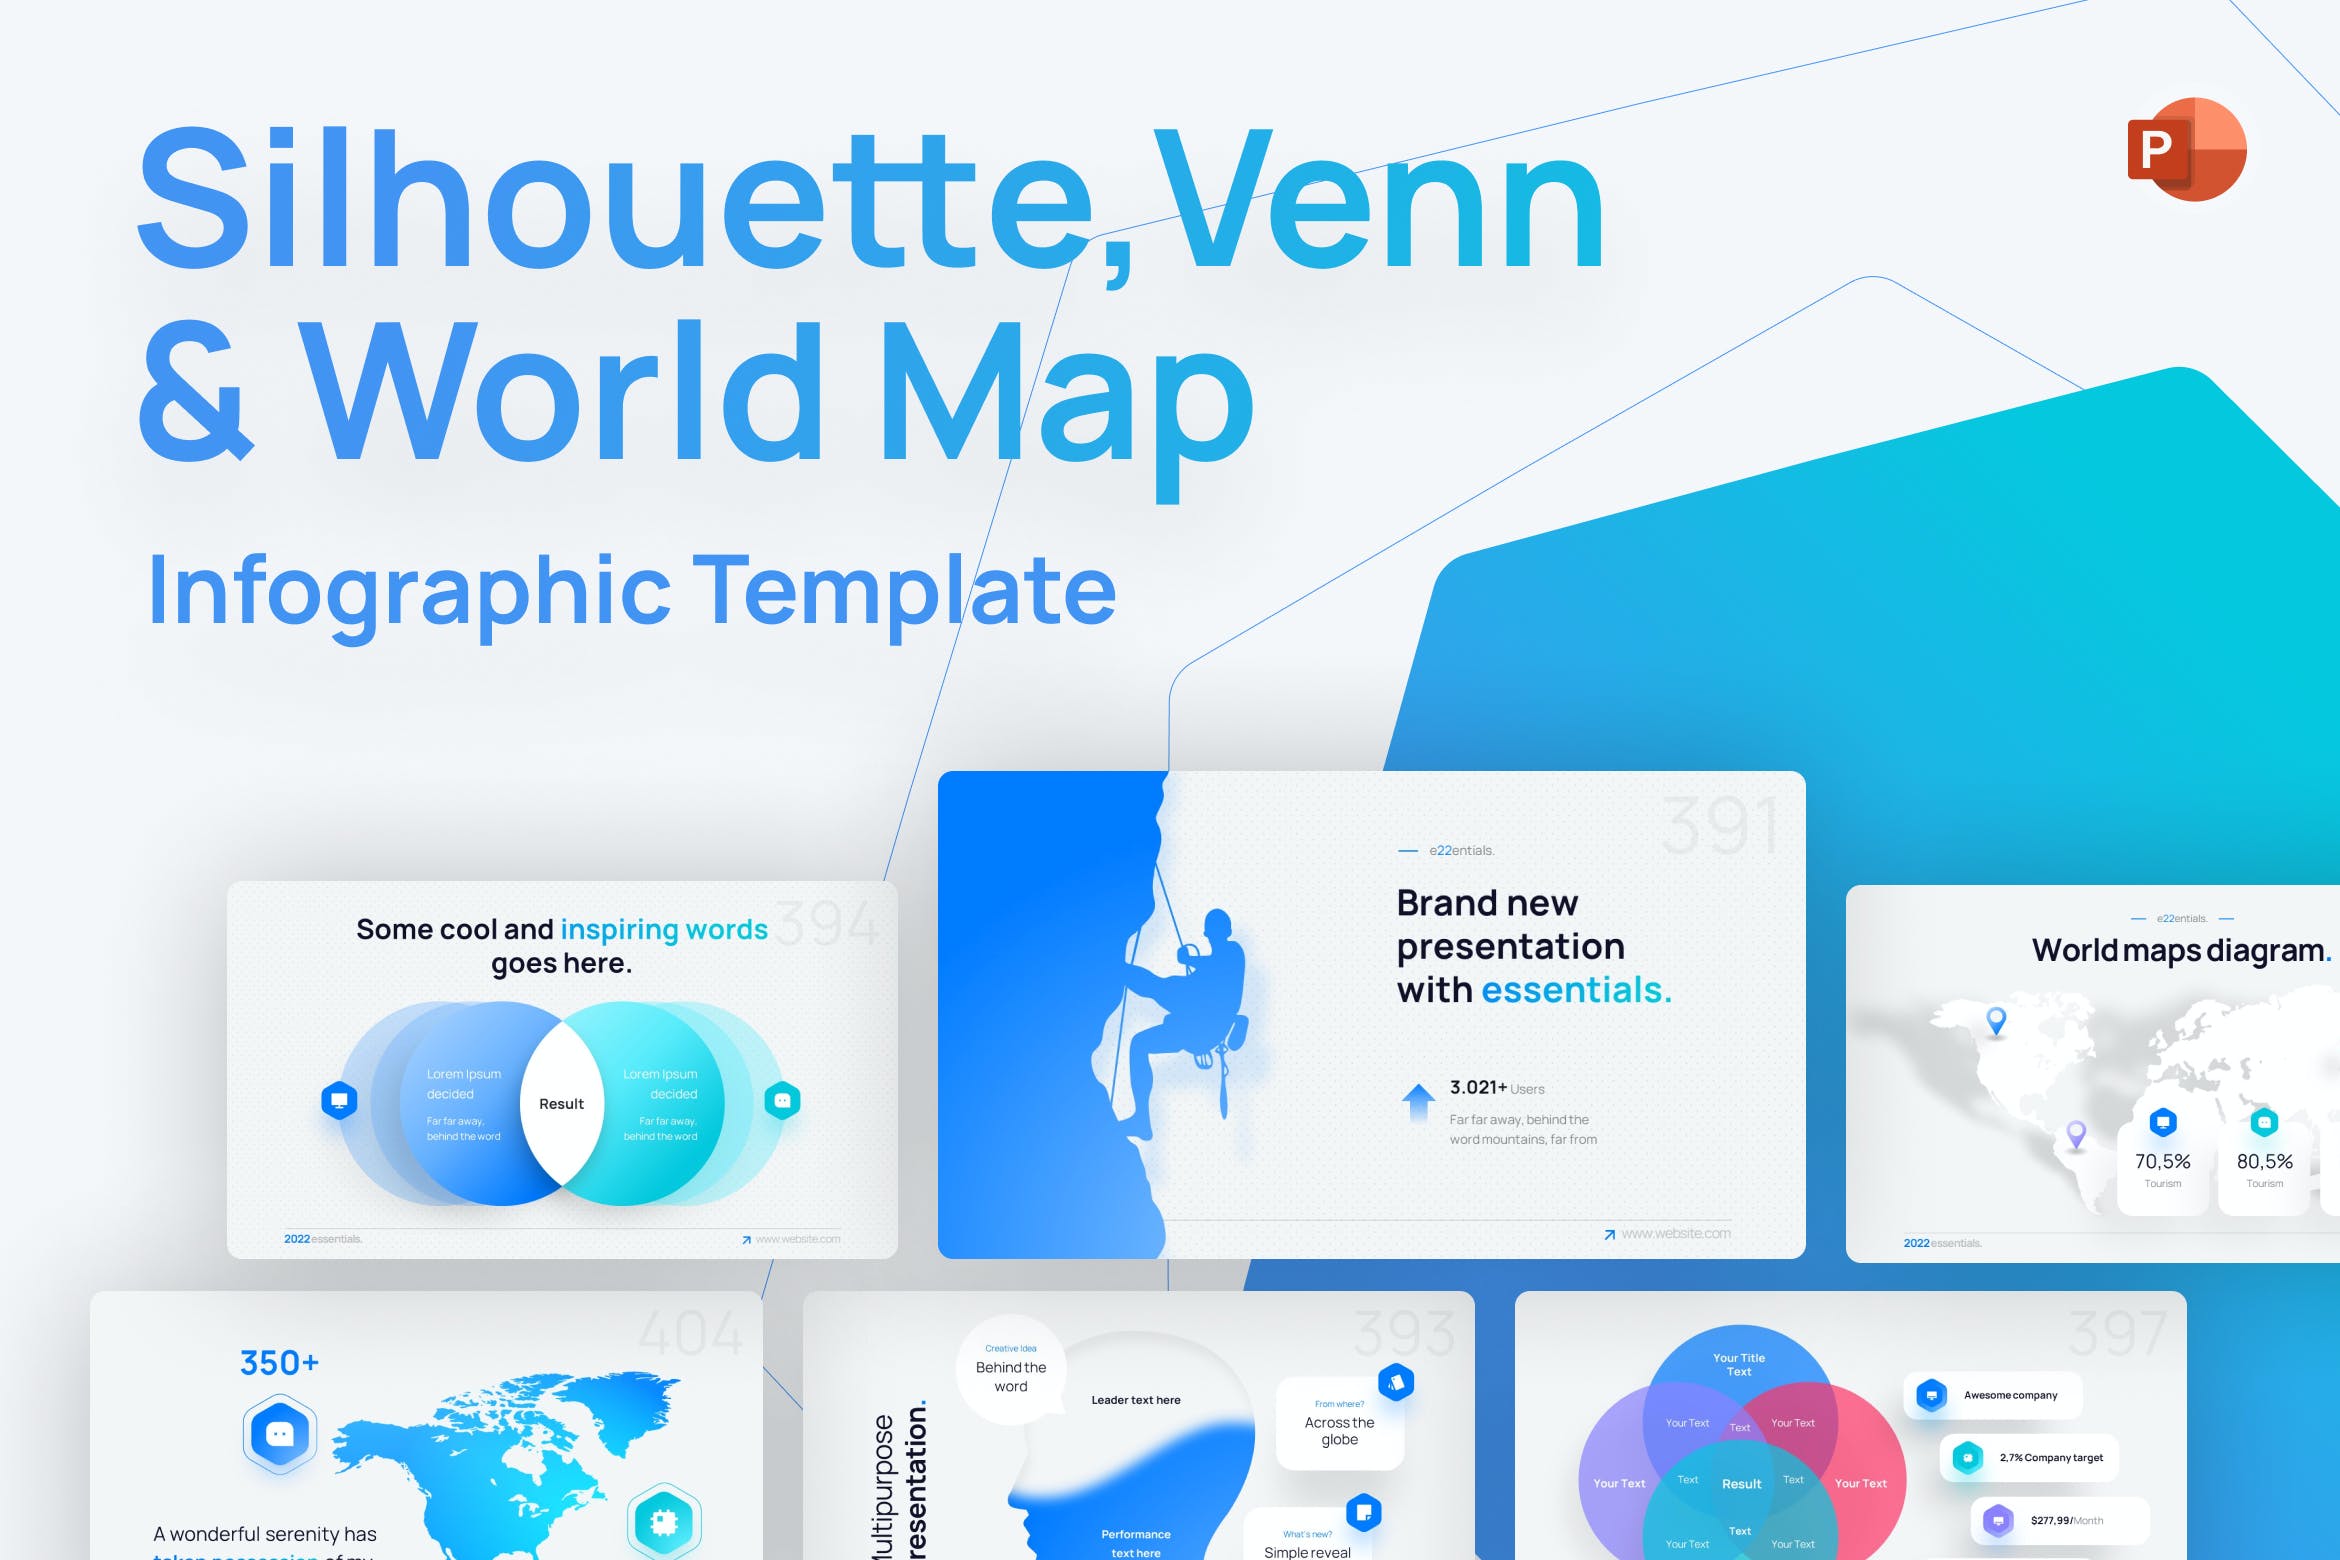 轮廓/维恩和世界地图PPT模板 Silhouette, Venn & World Map PowerPoint Template 幻灯图表 第1张